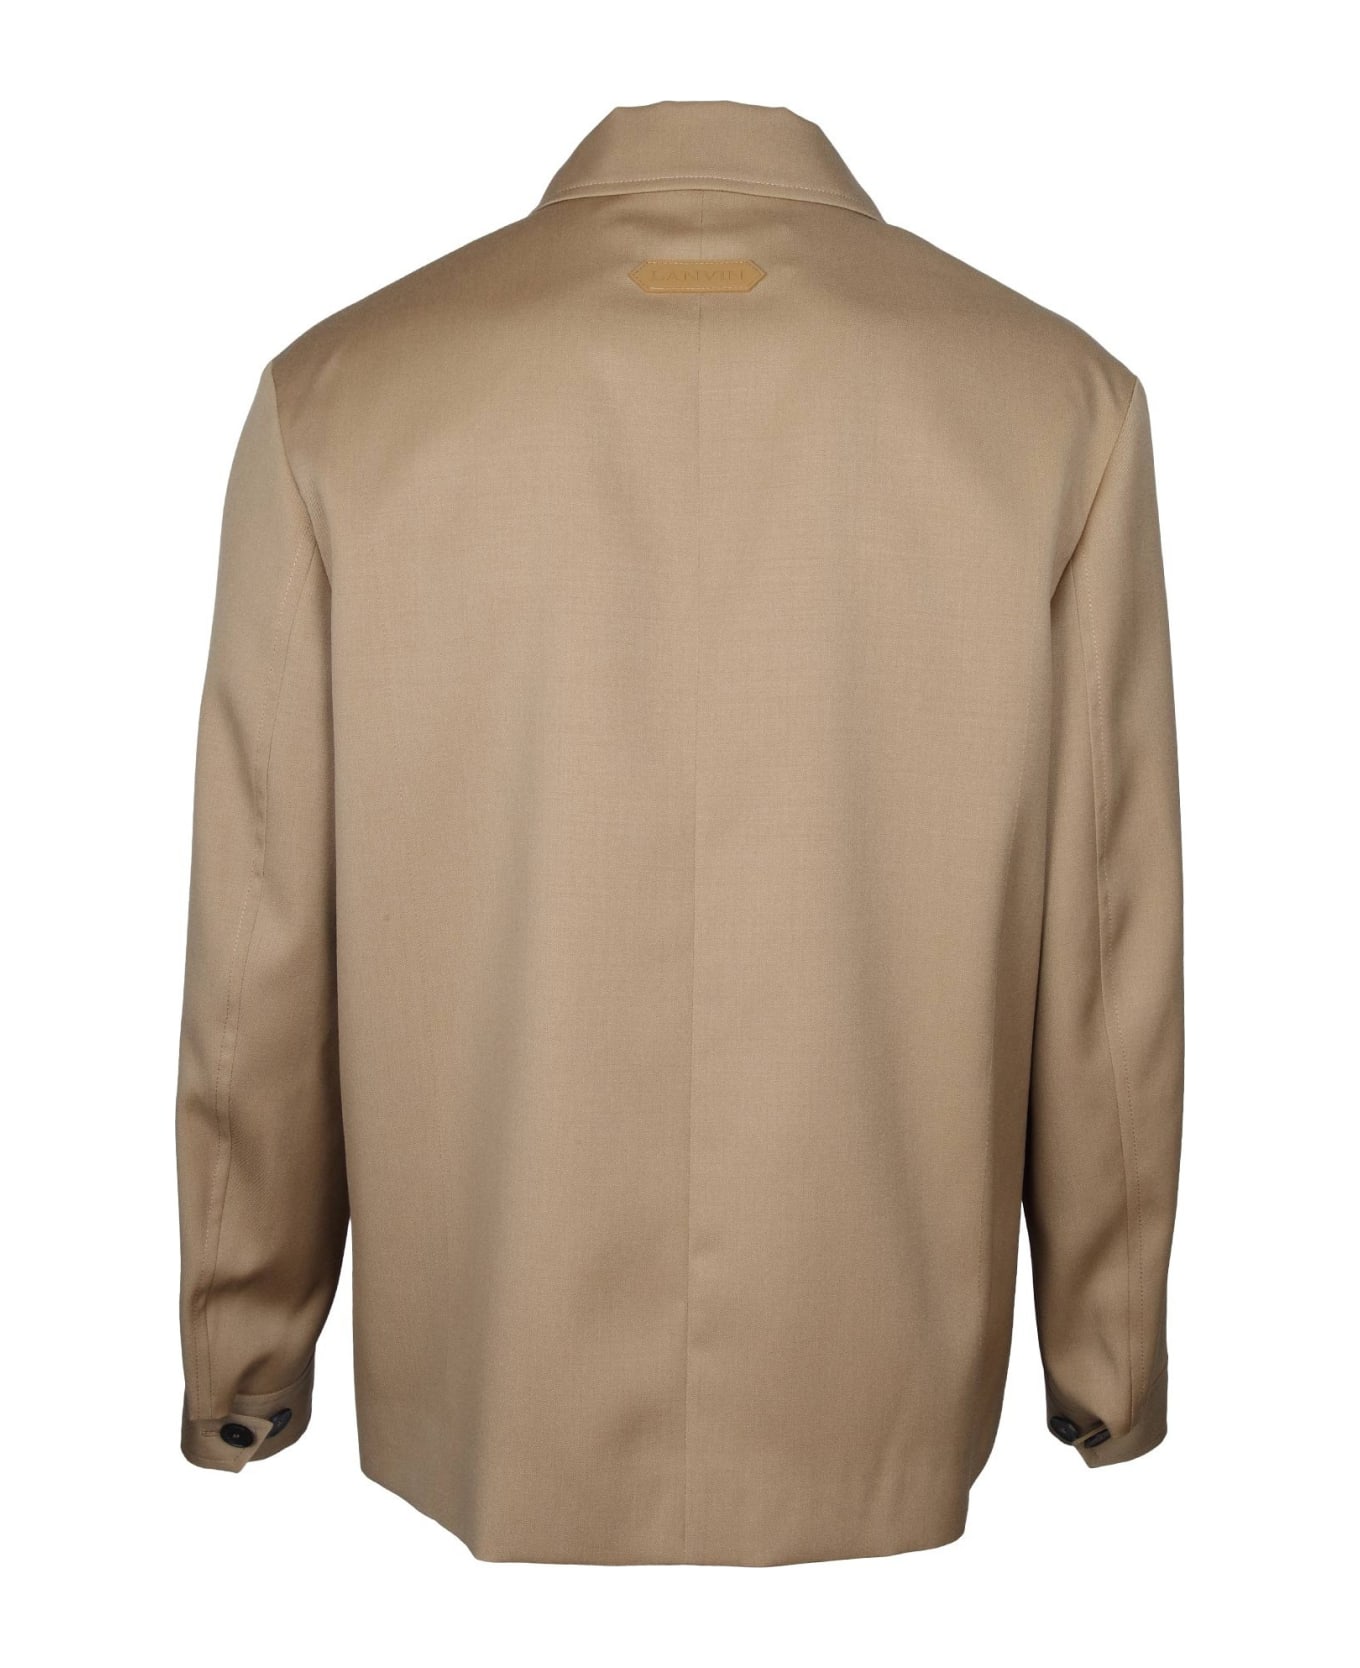 Lanvin Wool Jacket With Zip Desert Color - Desert ジャケット